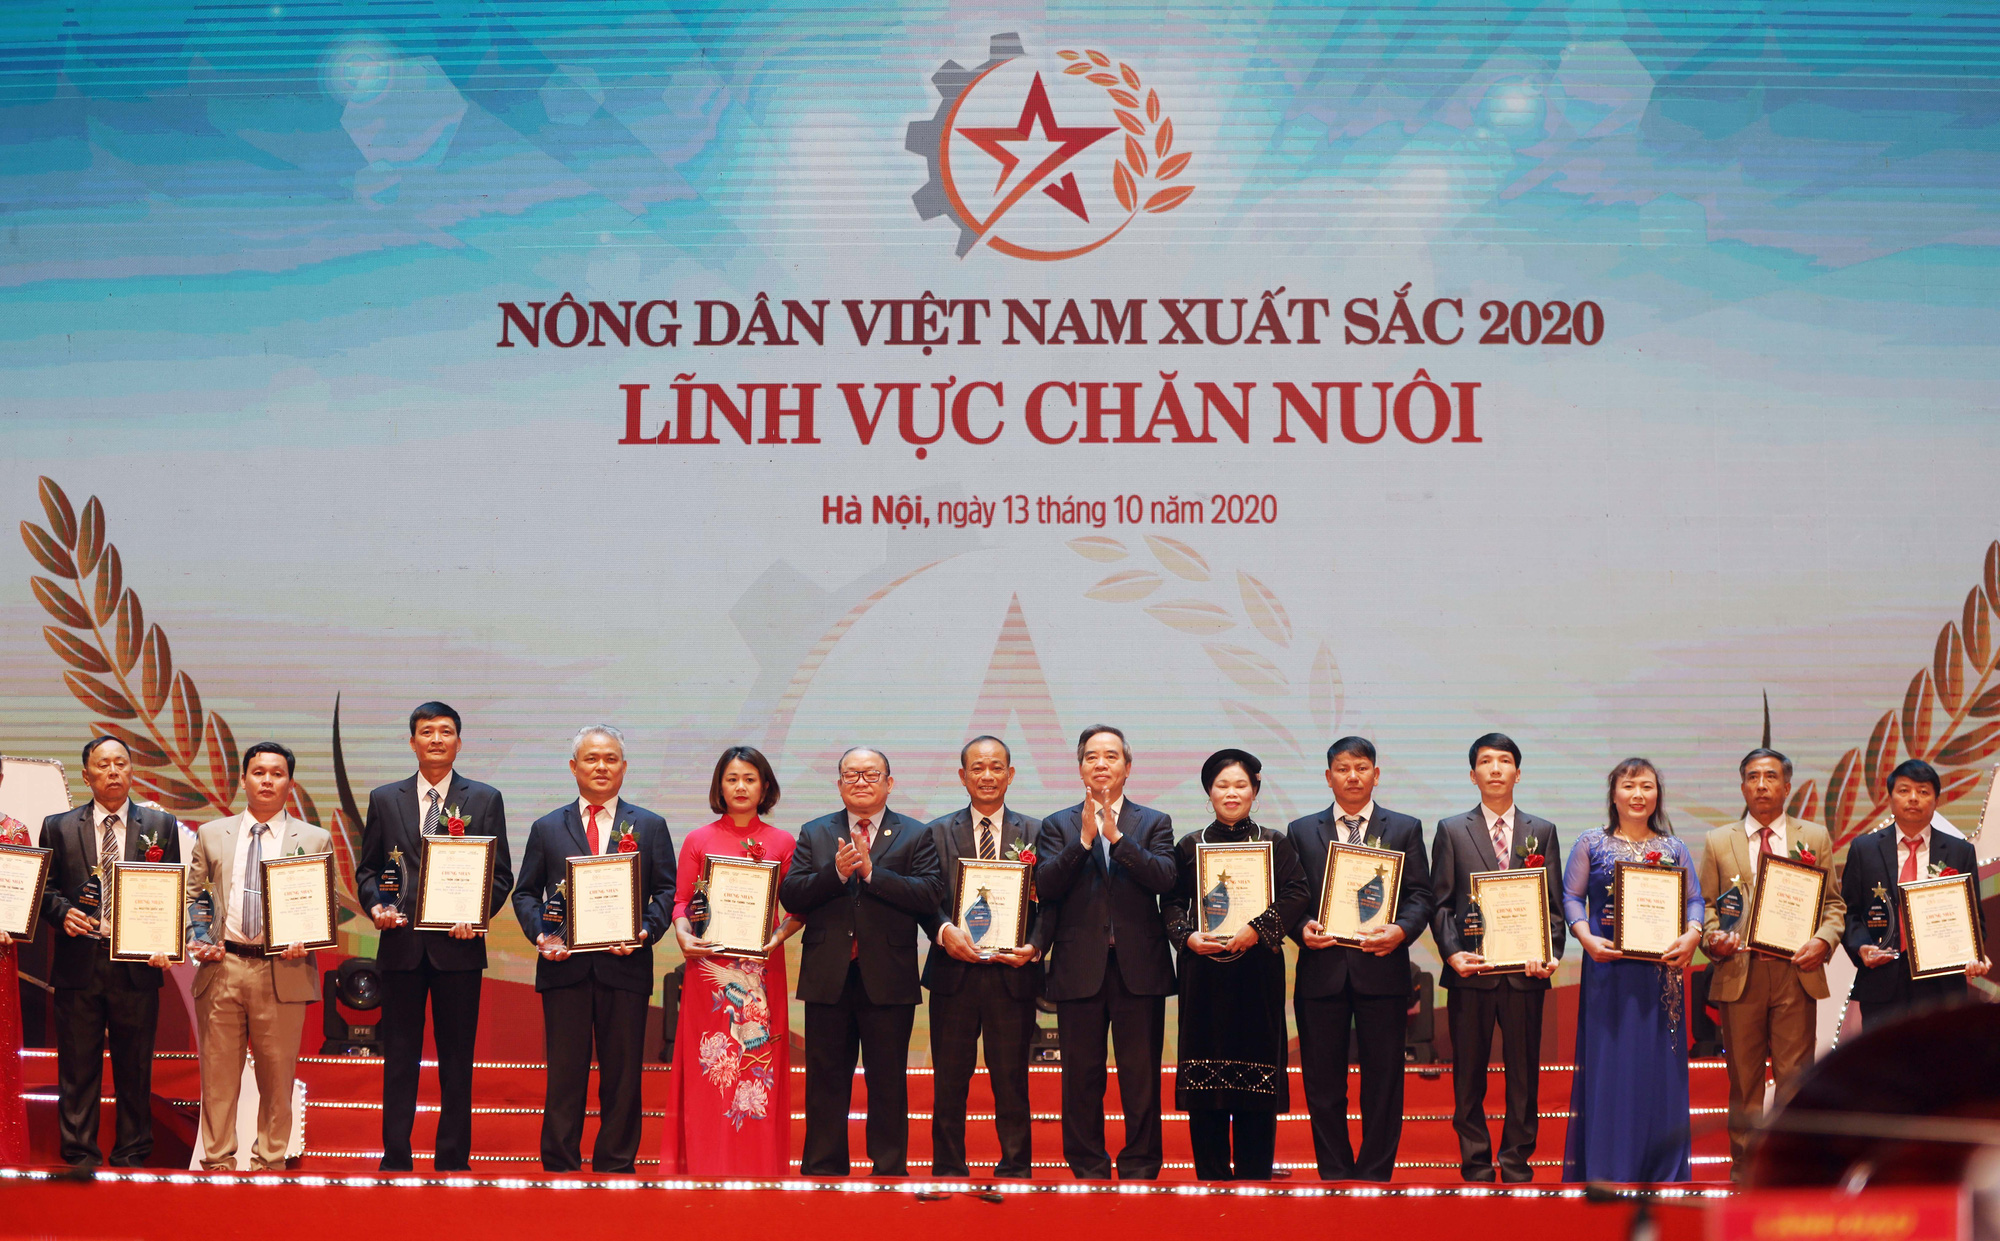 Ảnh: Toàn cảnh Lễ tôn vinh và trao danh hiệu 63 Nông dân Việt Nam xuất sắc 2020 - Ảnh 9.